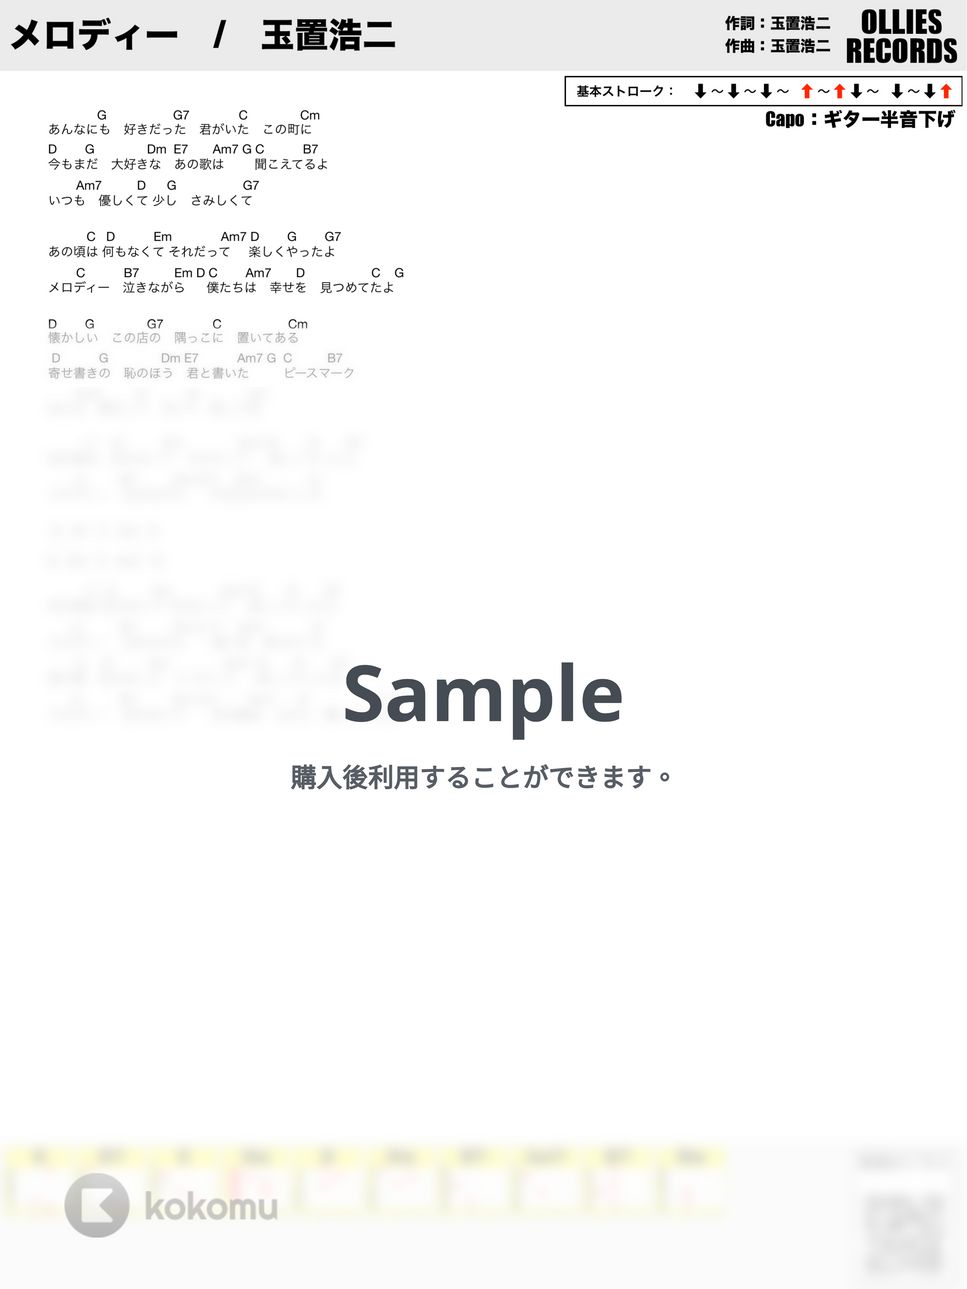 玉置浩二 - メロディー by オーリーズの音楽室